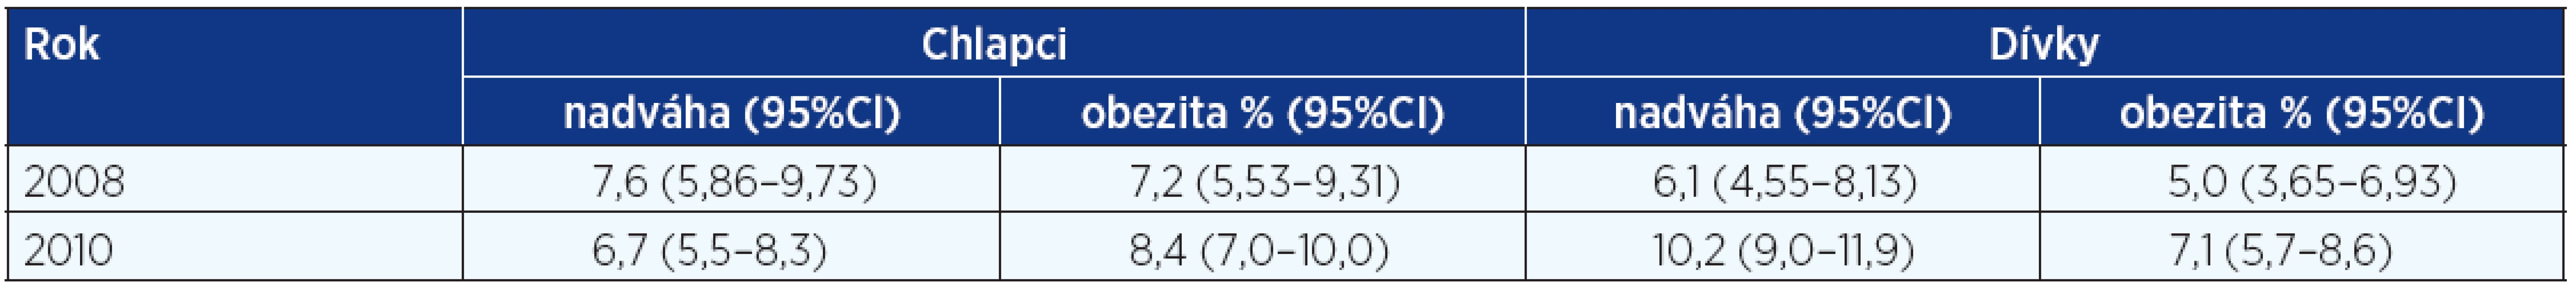 Srovnání prevalence nadváhy a obezity vyhodnocené v roce 2008 a 2010 podle českých referenčních hodnot 1991 (CAV)